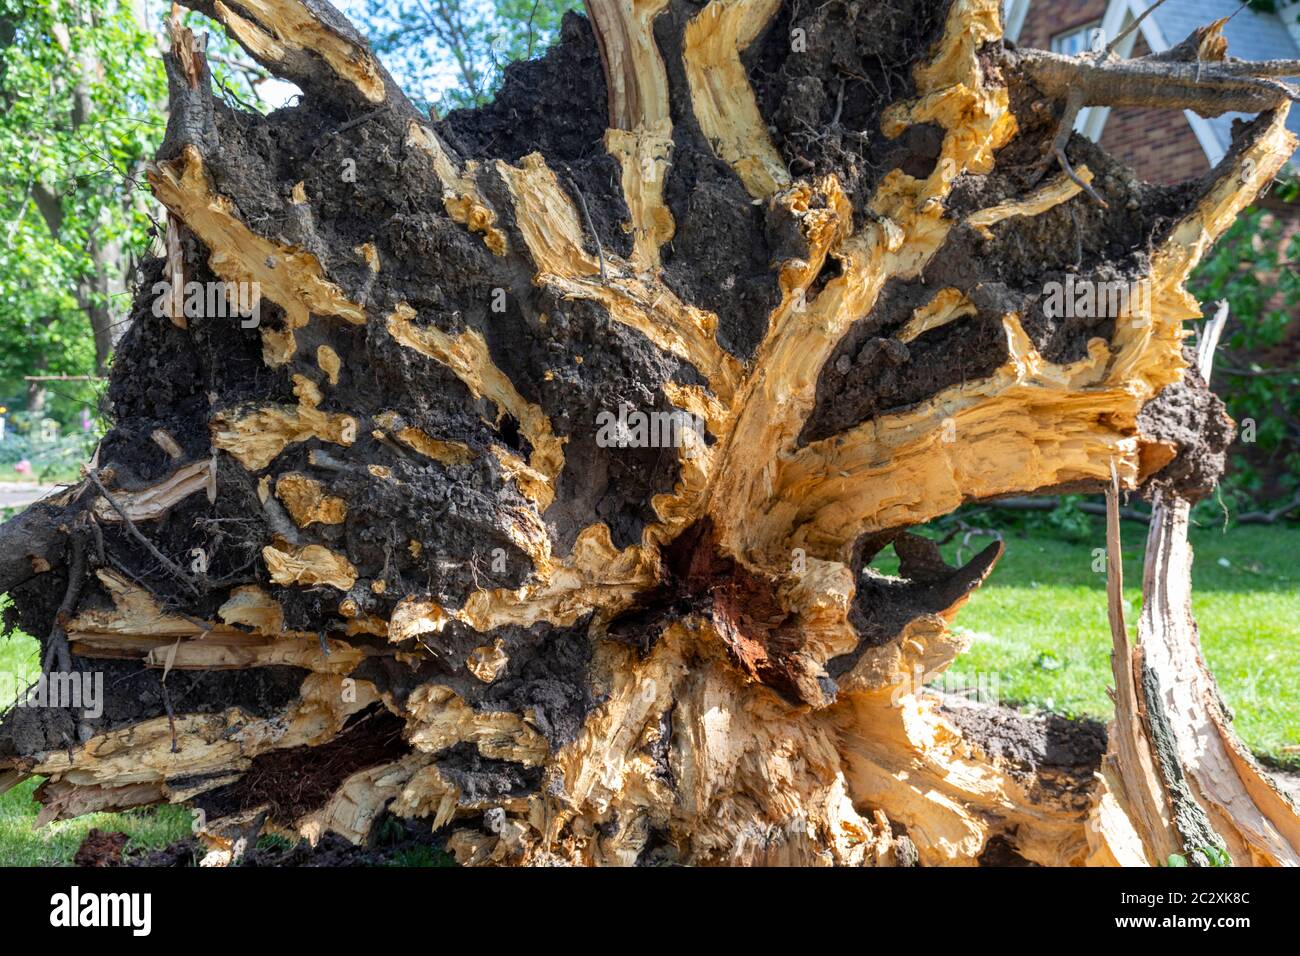 Detroit, Michigan - die Überreste des tropischen Sturms Cristobal brachten große Bäume zum Boden und verursachten weit verbreitete Stromausfälle auf der Ostseite von Detroit. Stockfoto